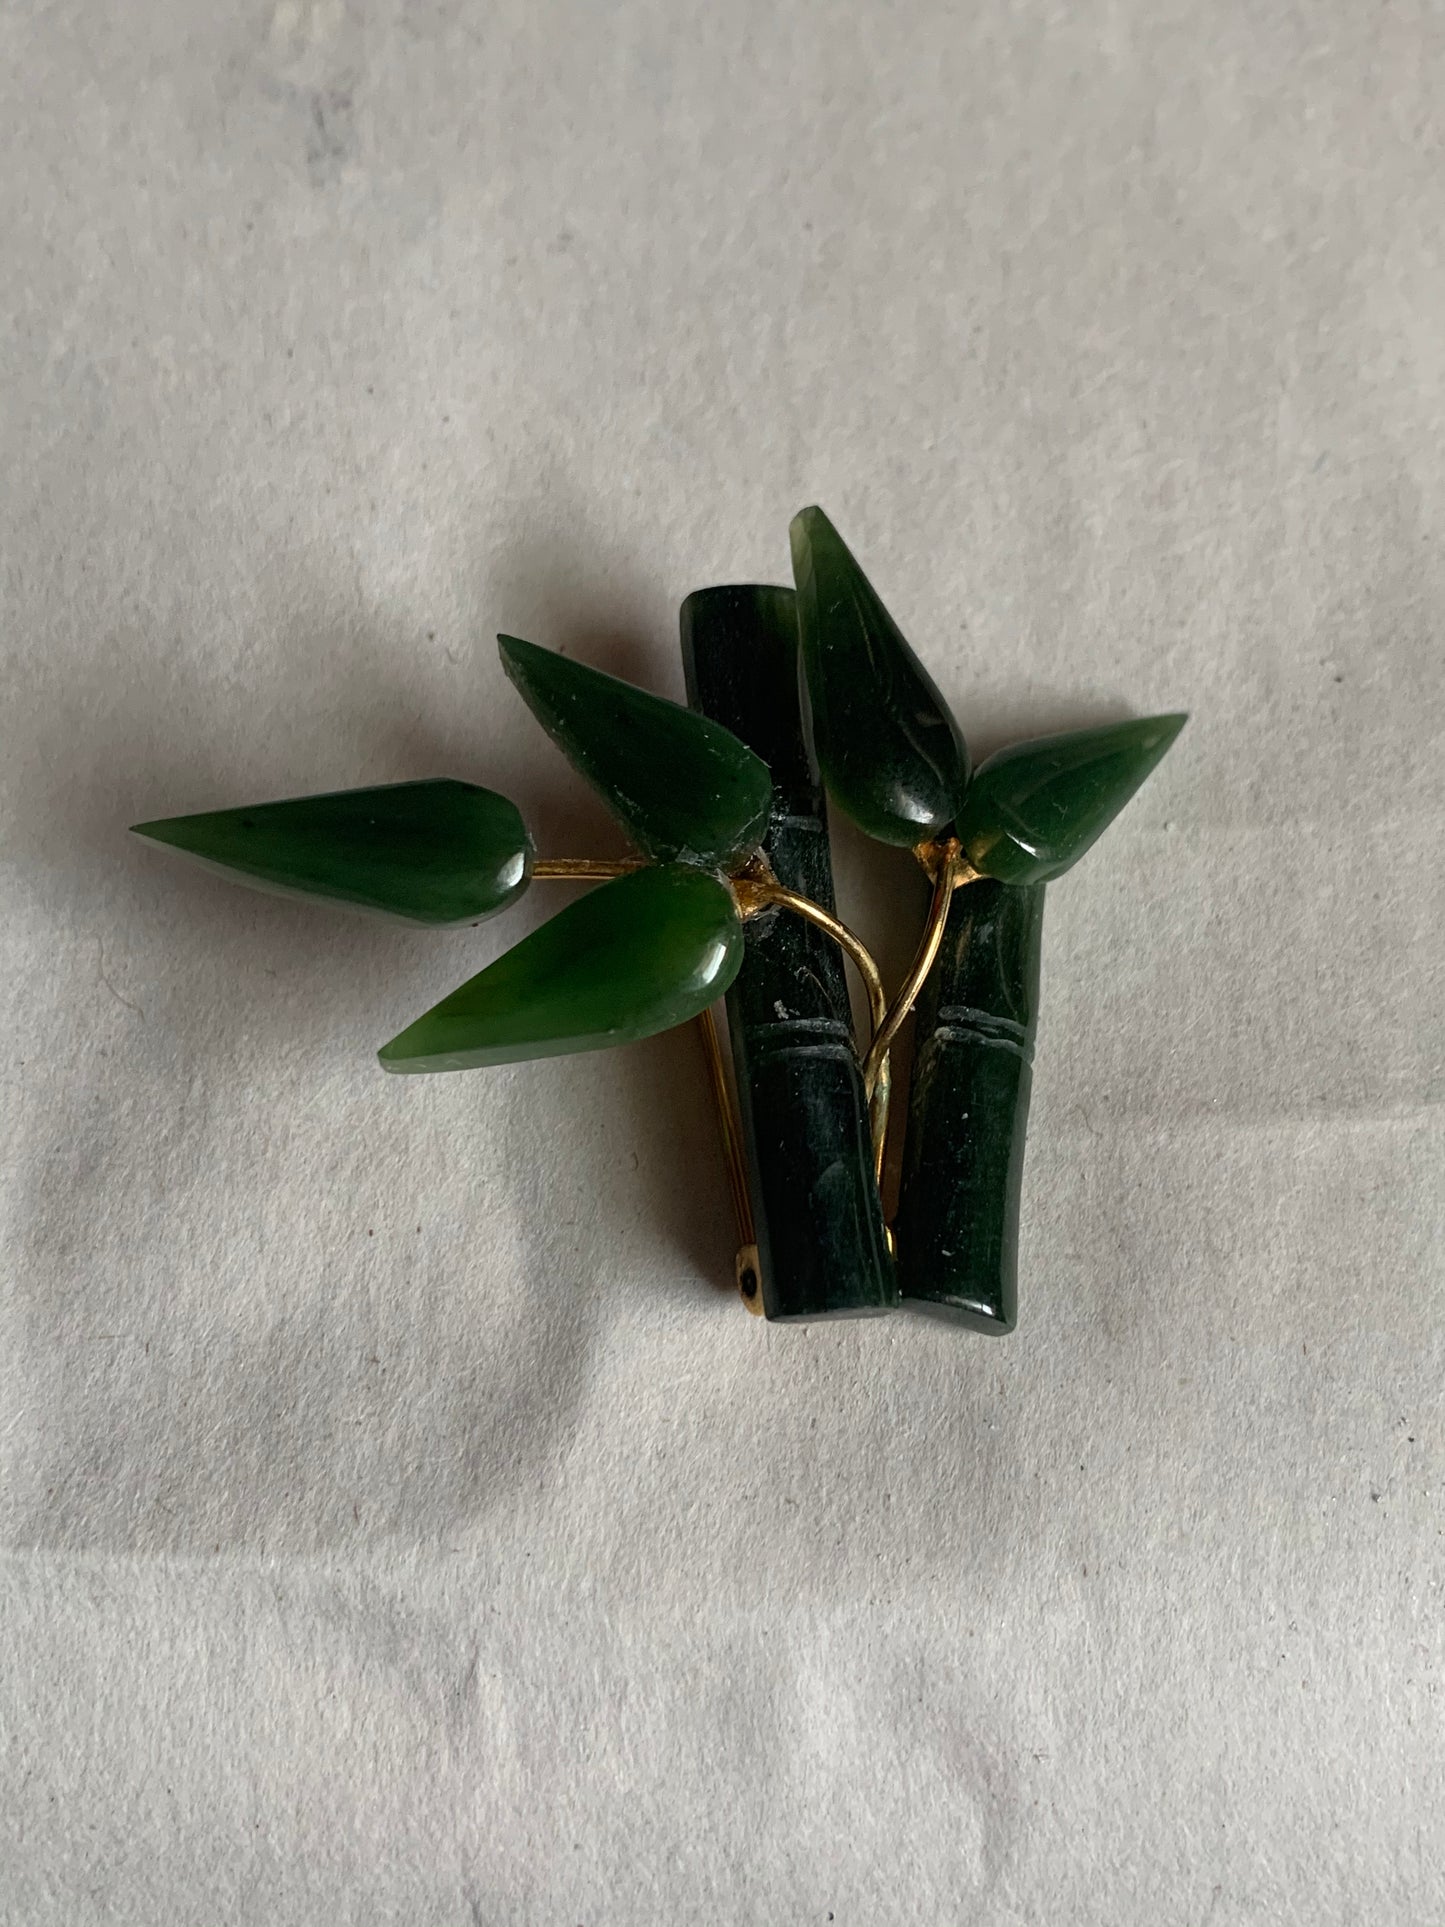 A jade nephrite brooch